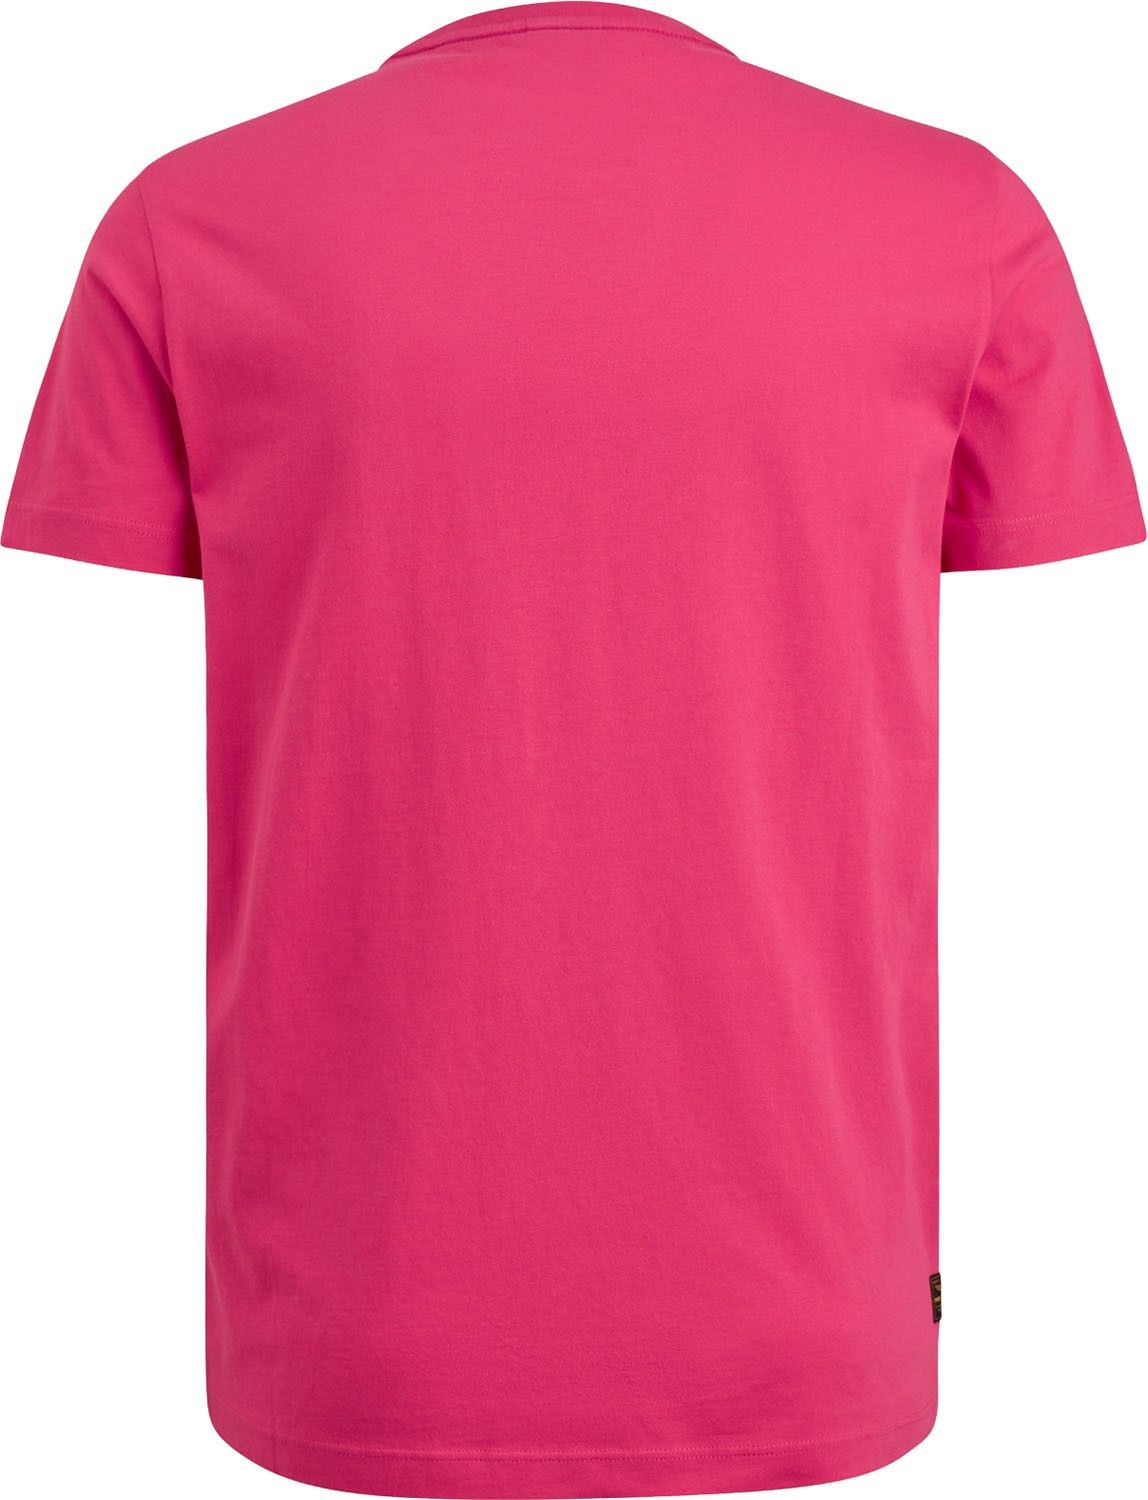 Pme Legend T-shirt Roze